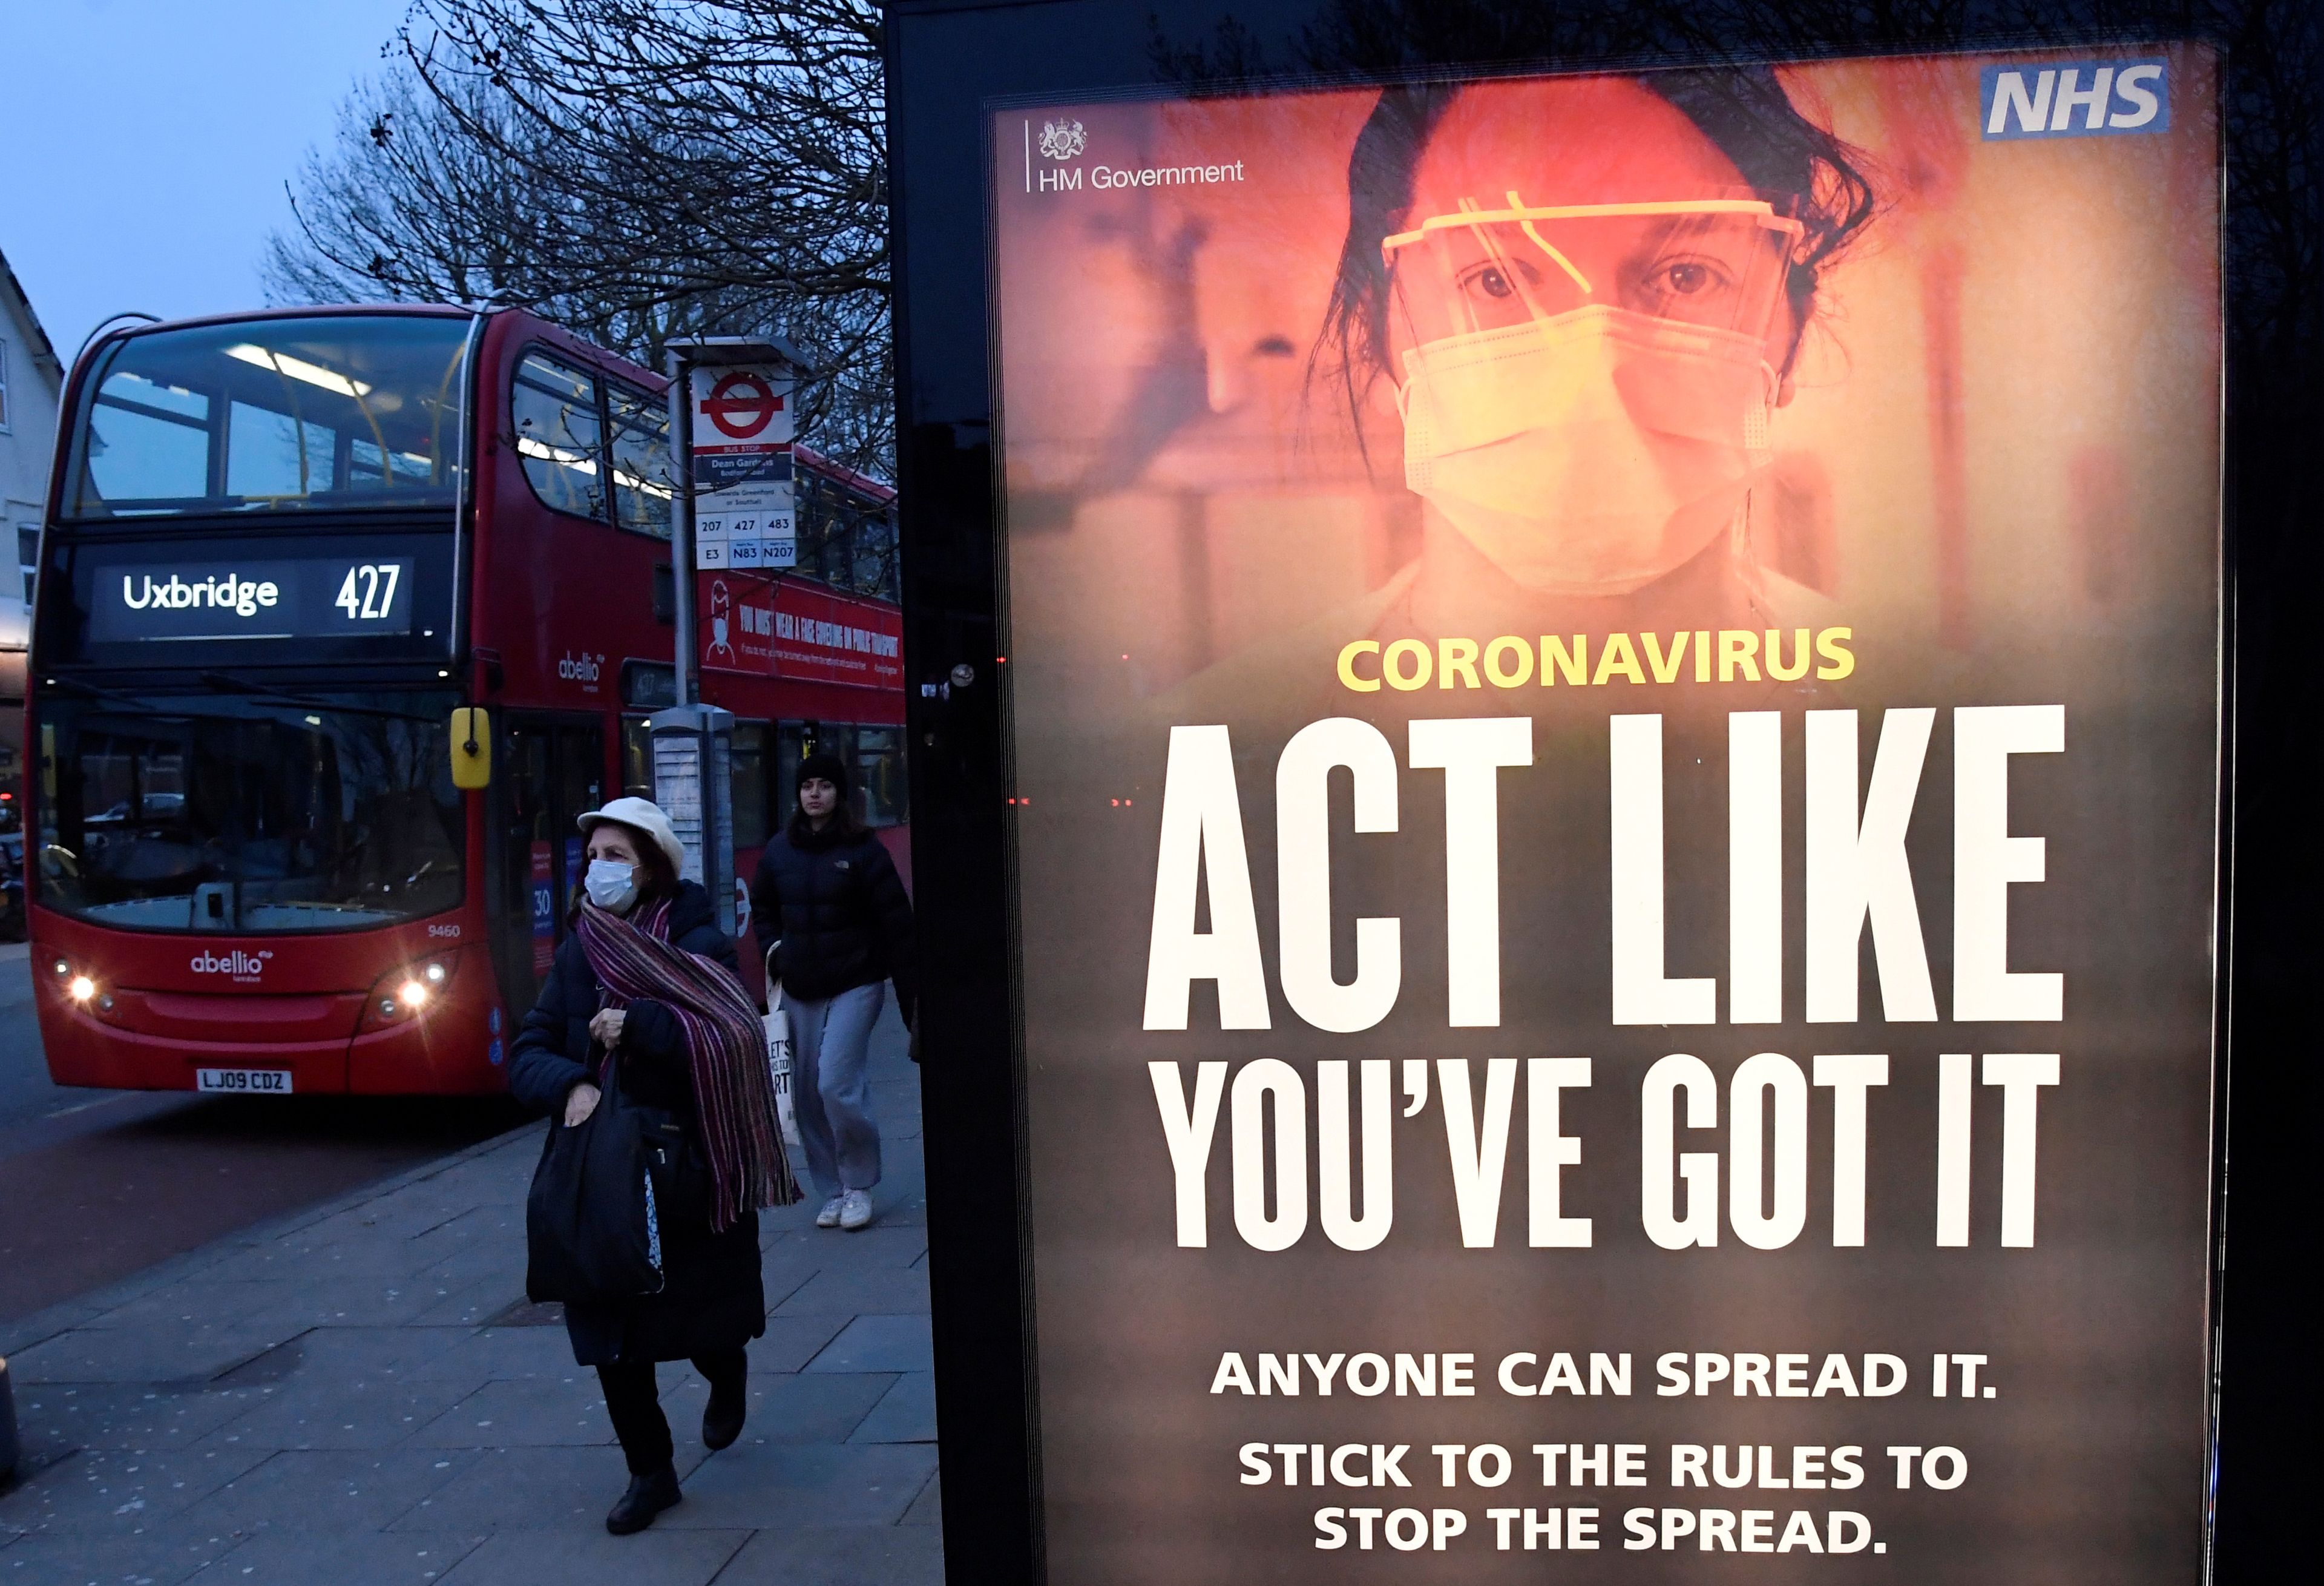 Mensaje informativo de prevención contra el coronavirus en Londres, Reino Unido.